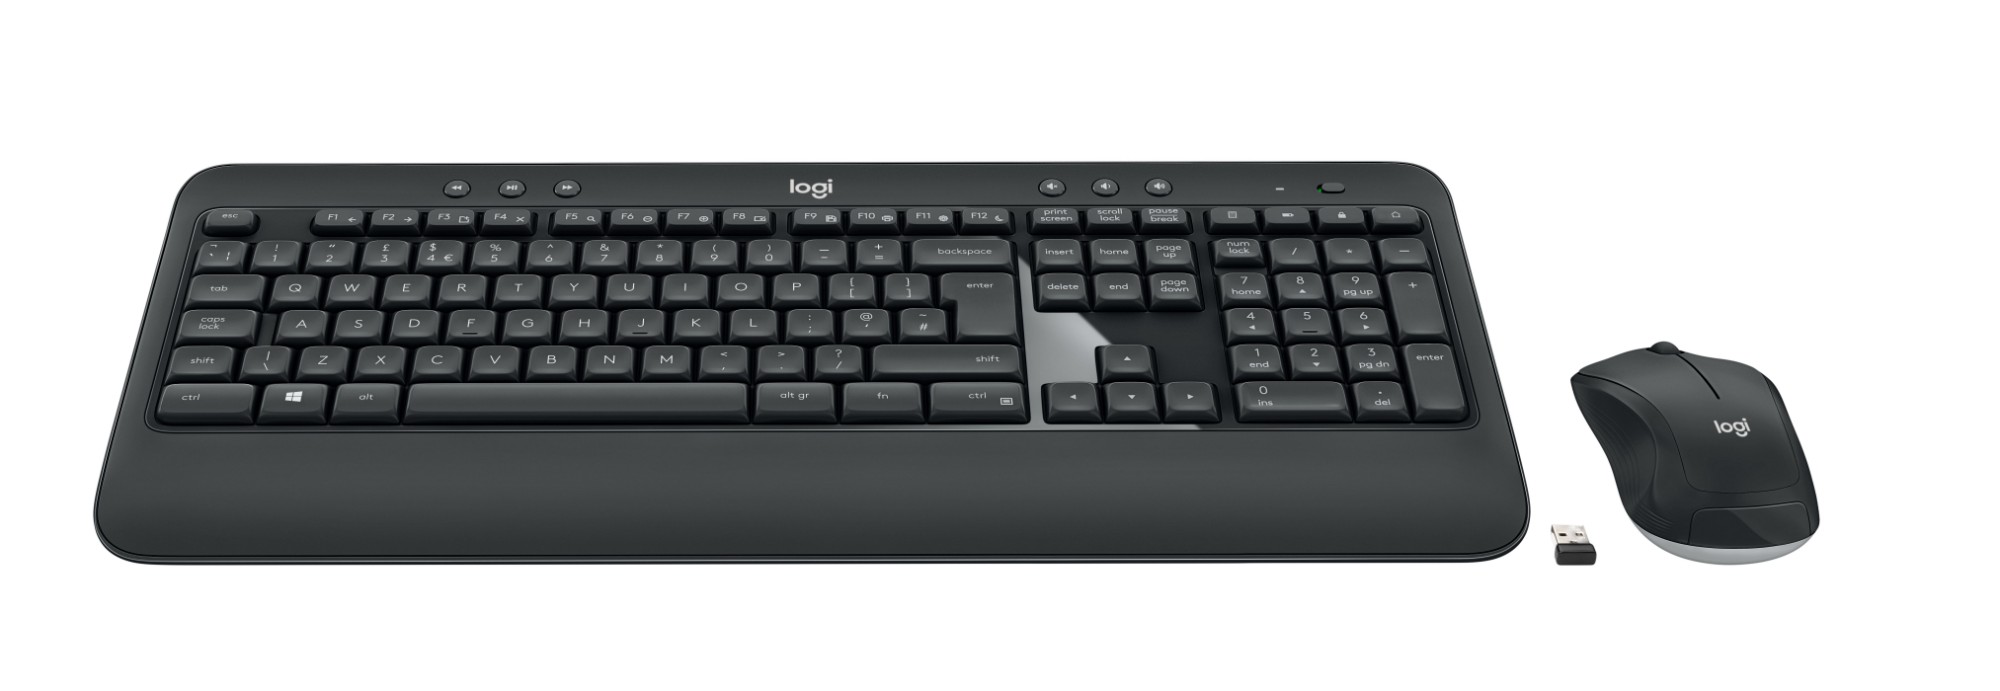 Logitech MK540 ADVANCED Wireless and Mouse Combo keyboard USB QWERTY UK English Black, White - 920-008684